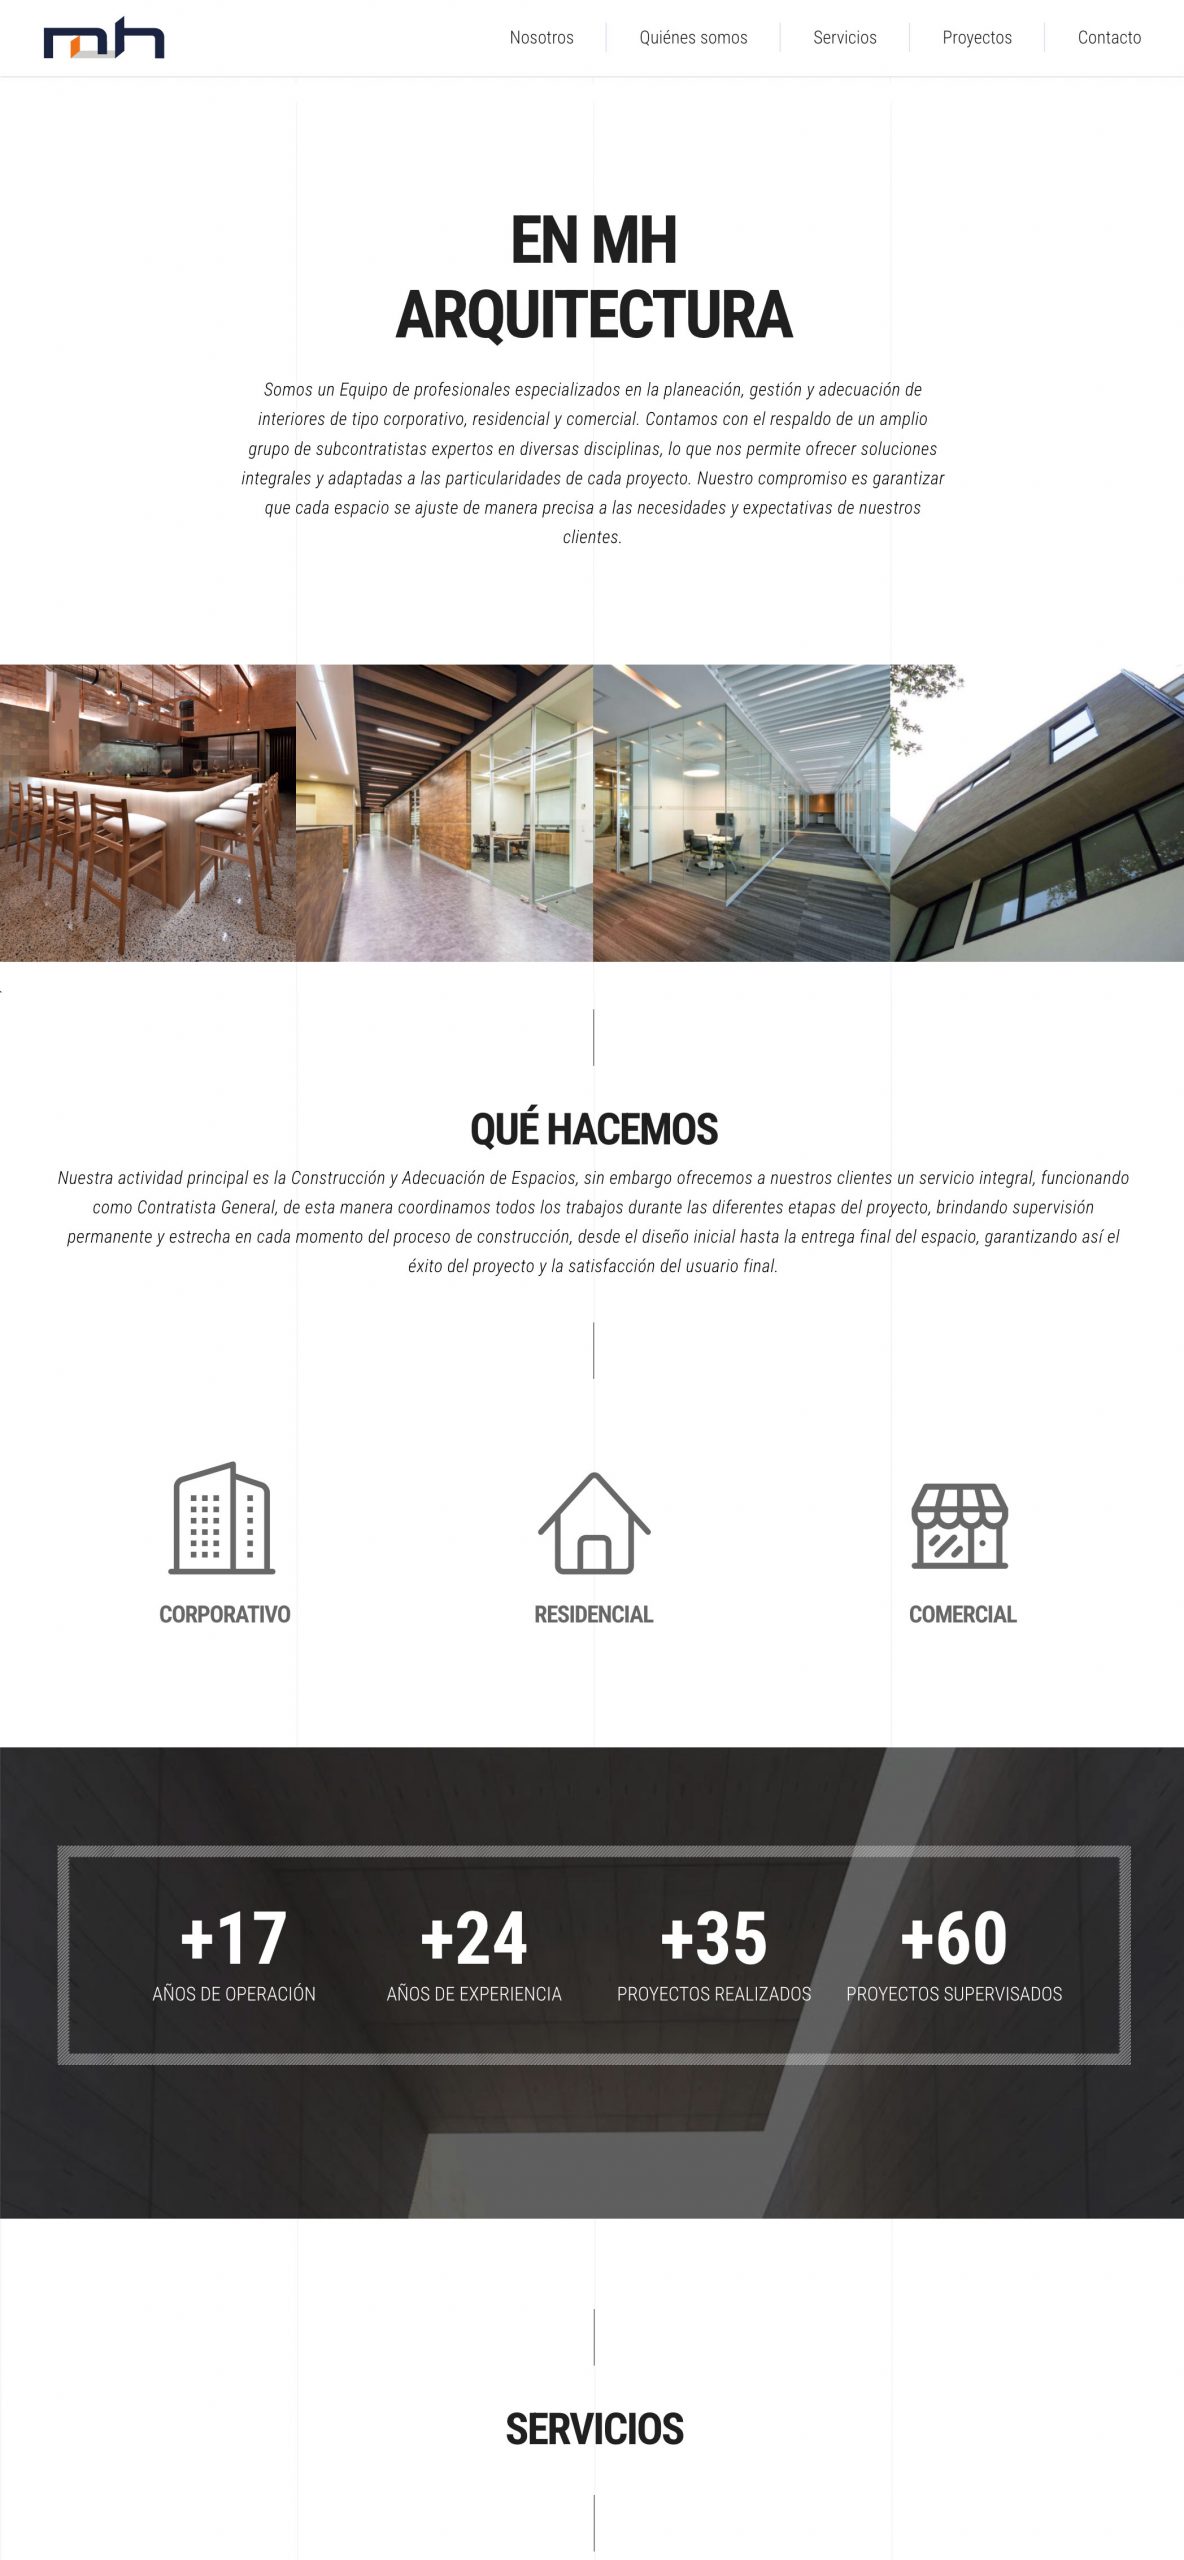 MH Arquitectura website